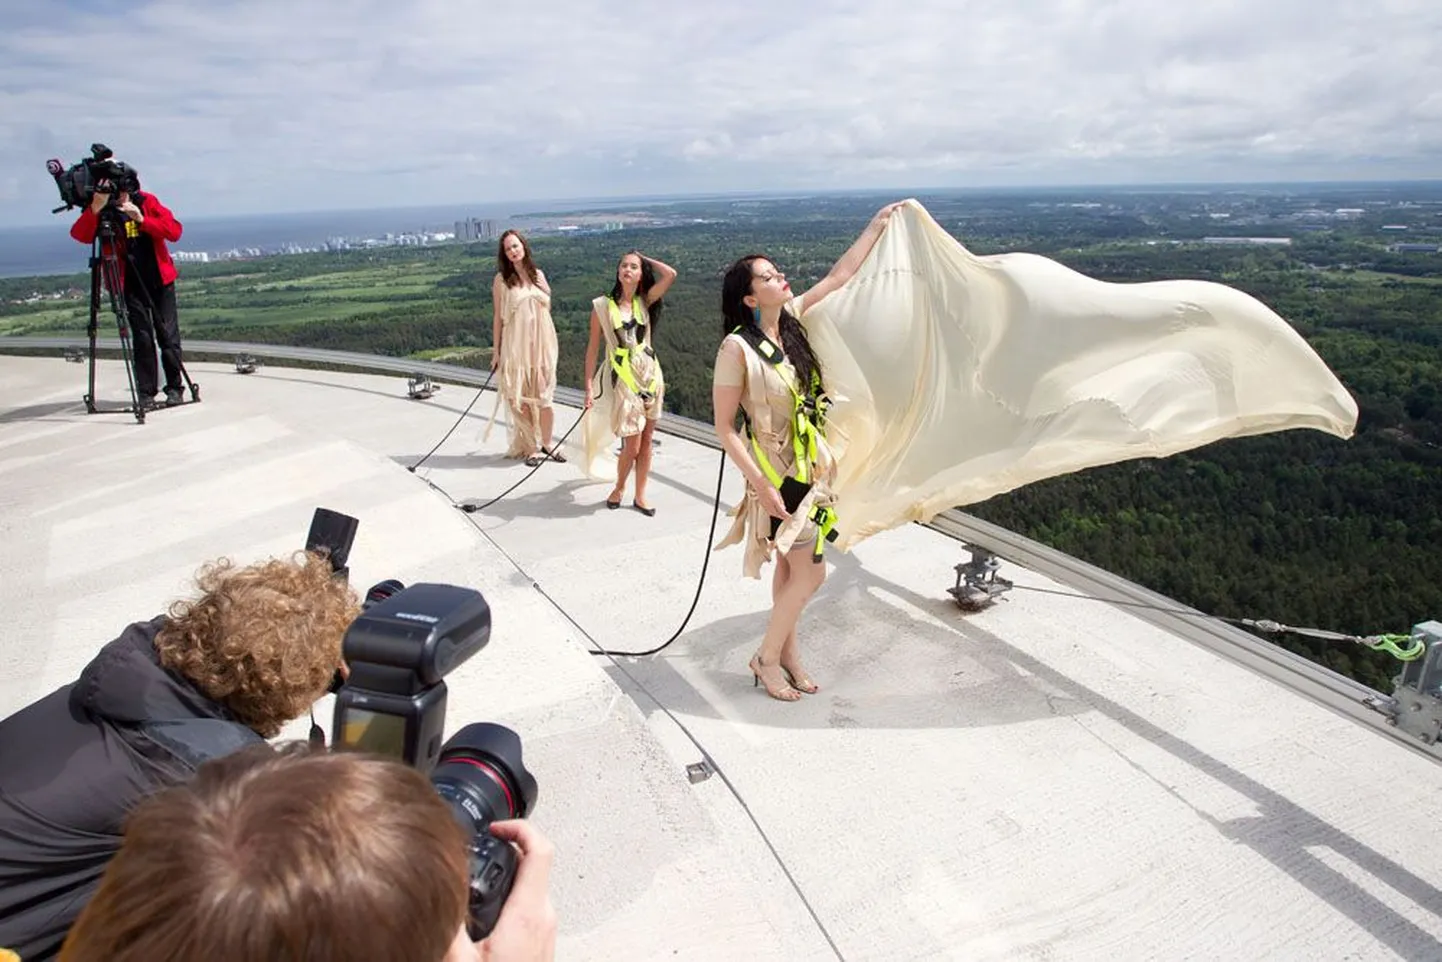 Esimese servakõnni tegid hulljulged modellid (pildil) Eesti tippdisaineri Aldo Järvsoo loodud kaunites kleitides.